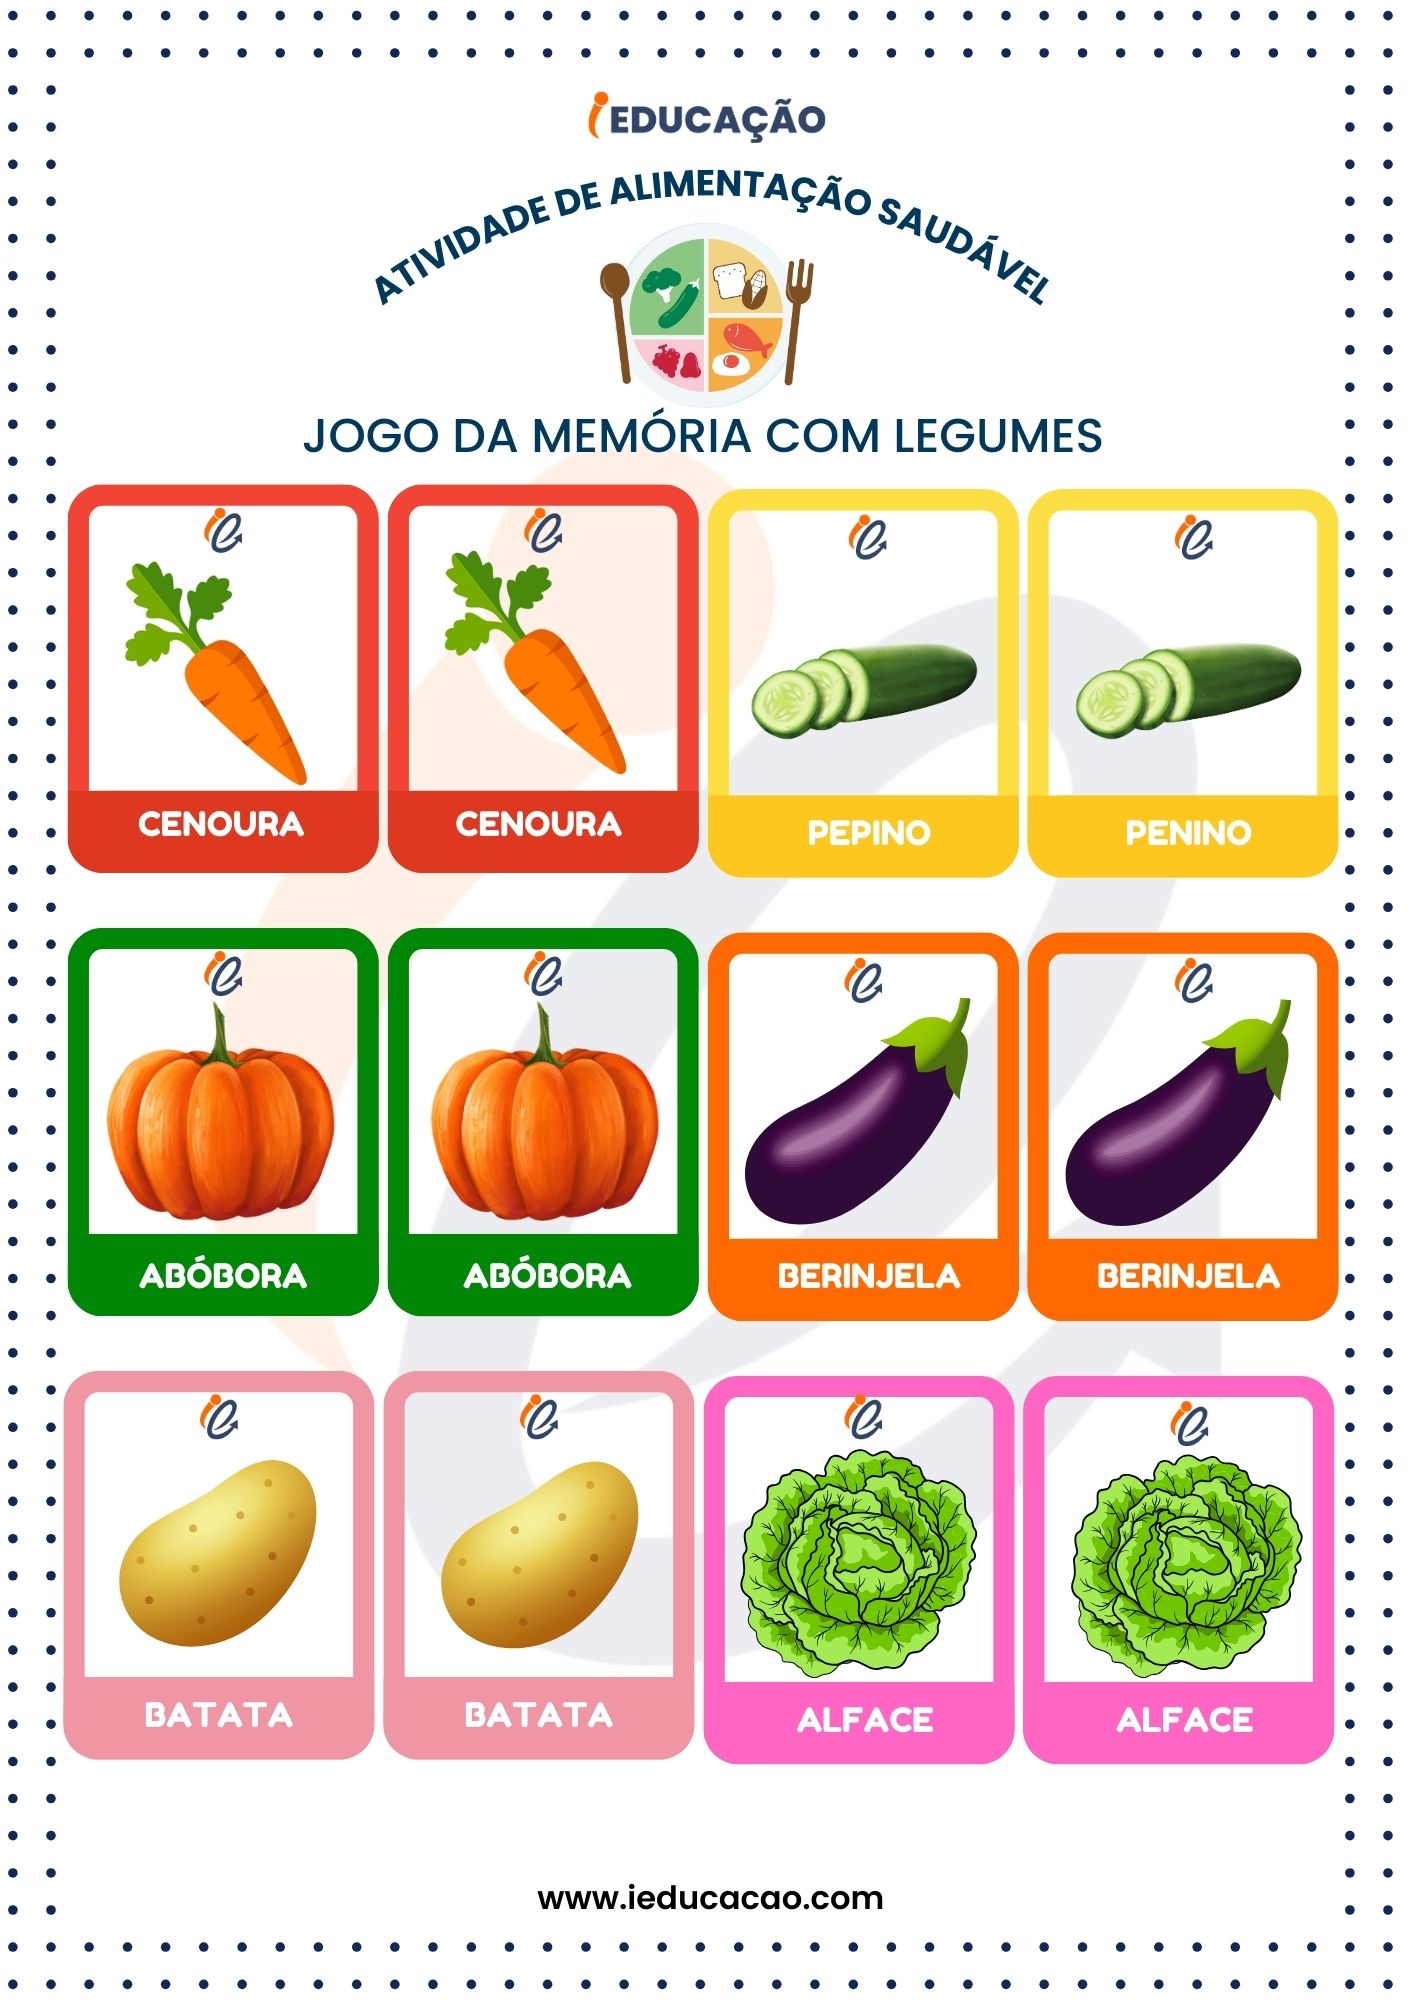 Atividades de Alimentação Saudável com jogo da memória com legumes. 